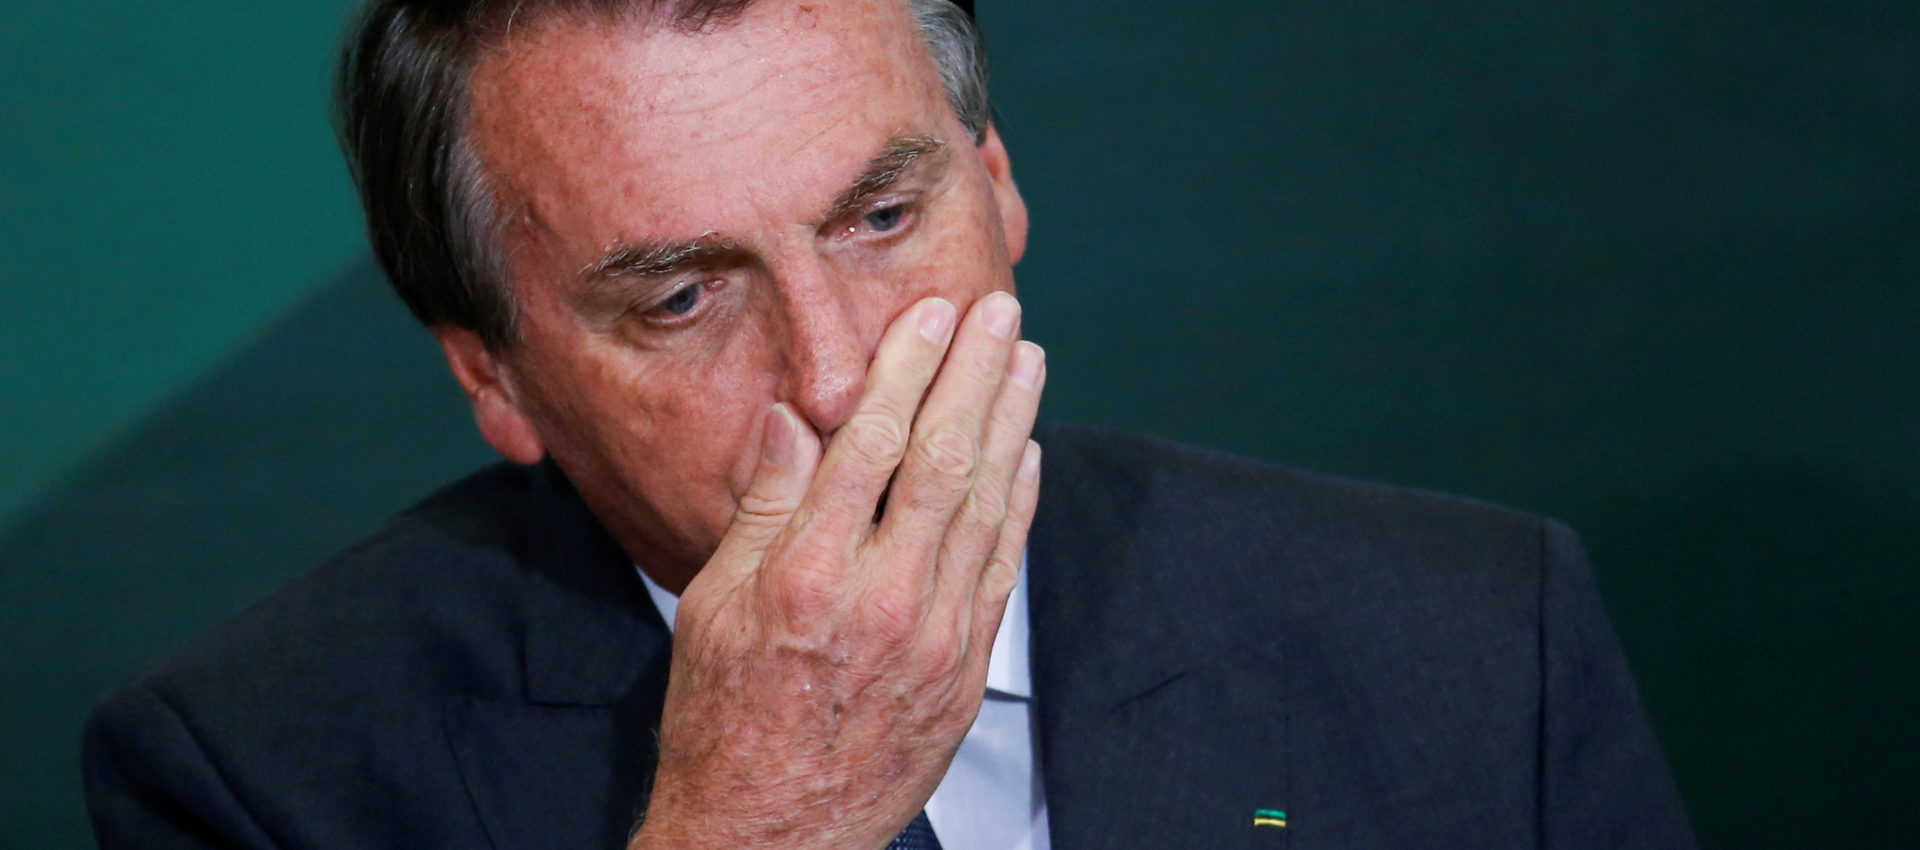 Investigarán a Bolsonaro por el intento de golpe en Brasil.